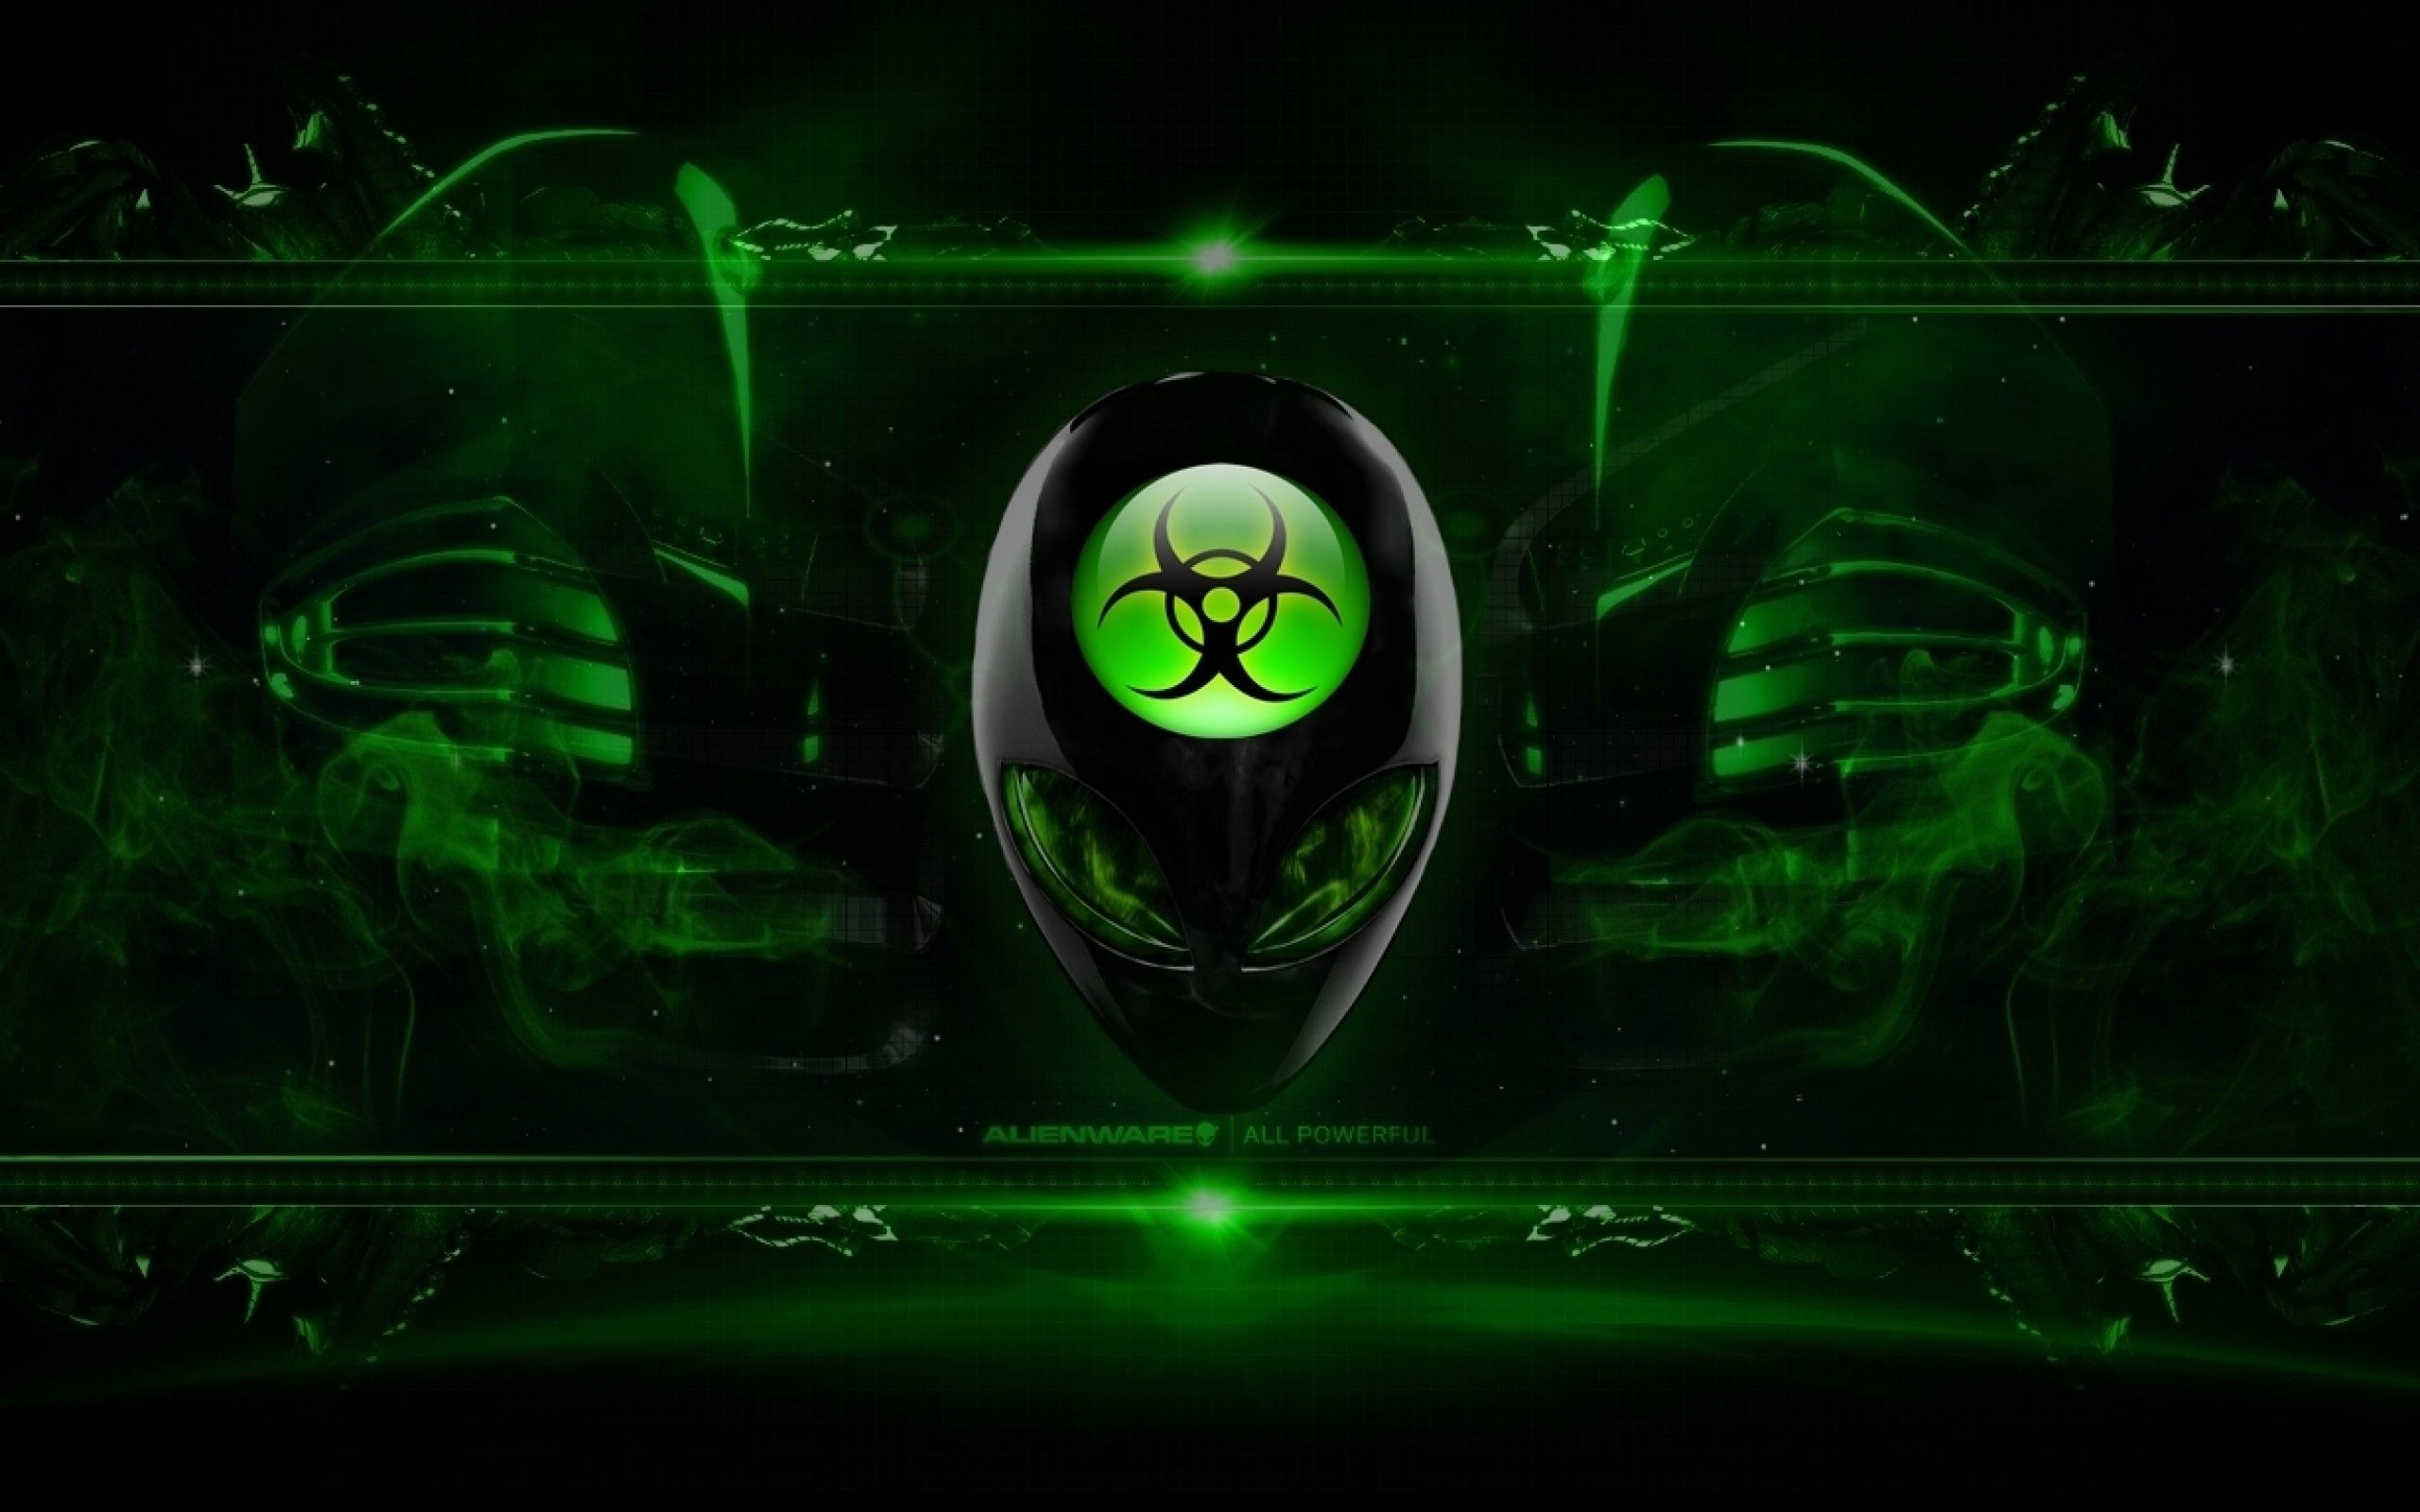 2560x1600 Alienware Desktop Background Radioactive Green | Backgrounds desktop, Alienware desktop, Desktop wallpaper summer